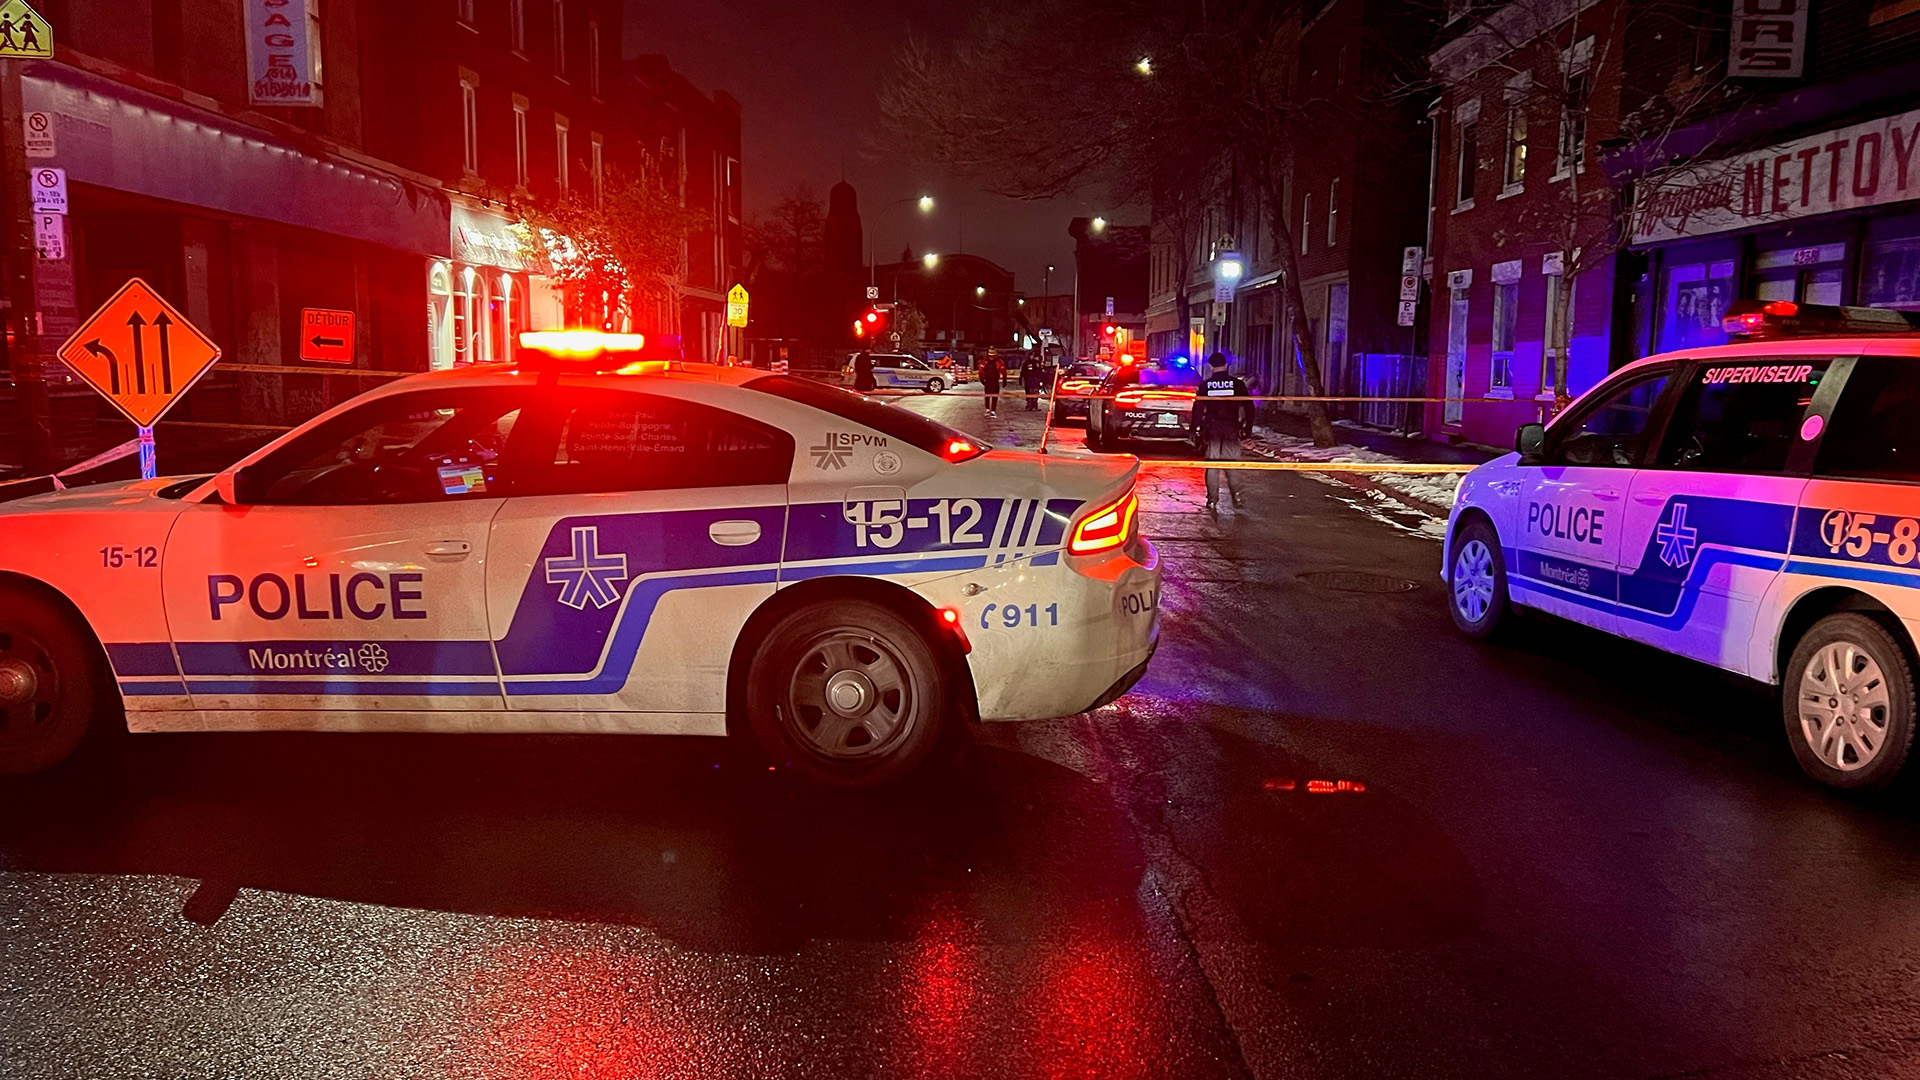 Un homme a été blessé par des coups d’arme blanche en début de nuit, mercredi, dans un bar du quartier Saint-Henri, dans le sud-ouest de Montréal.